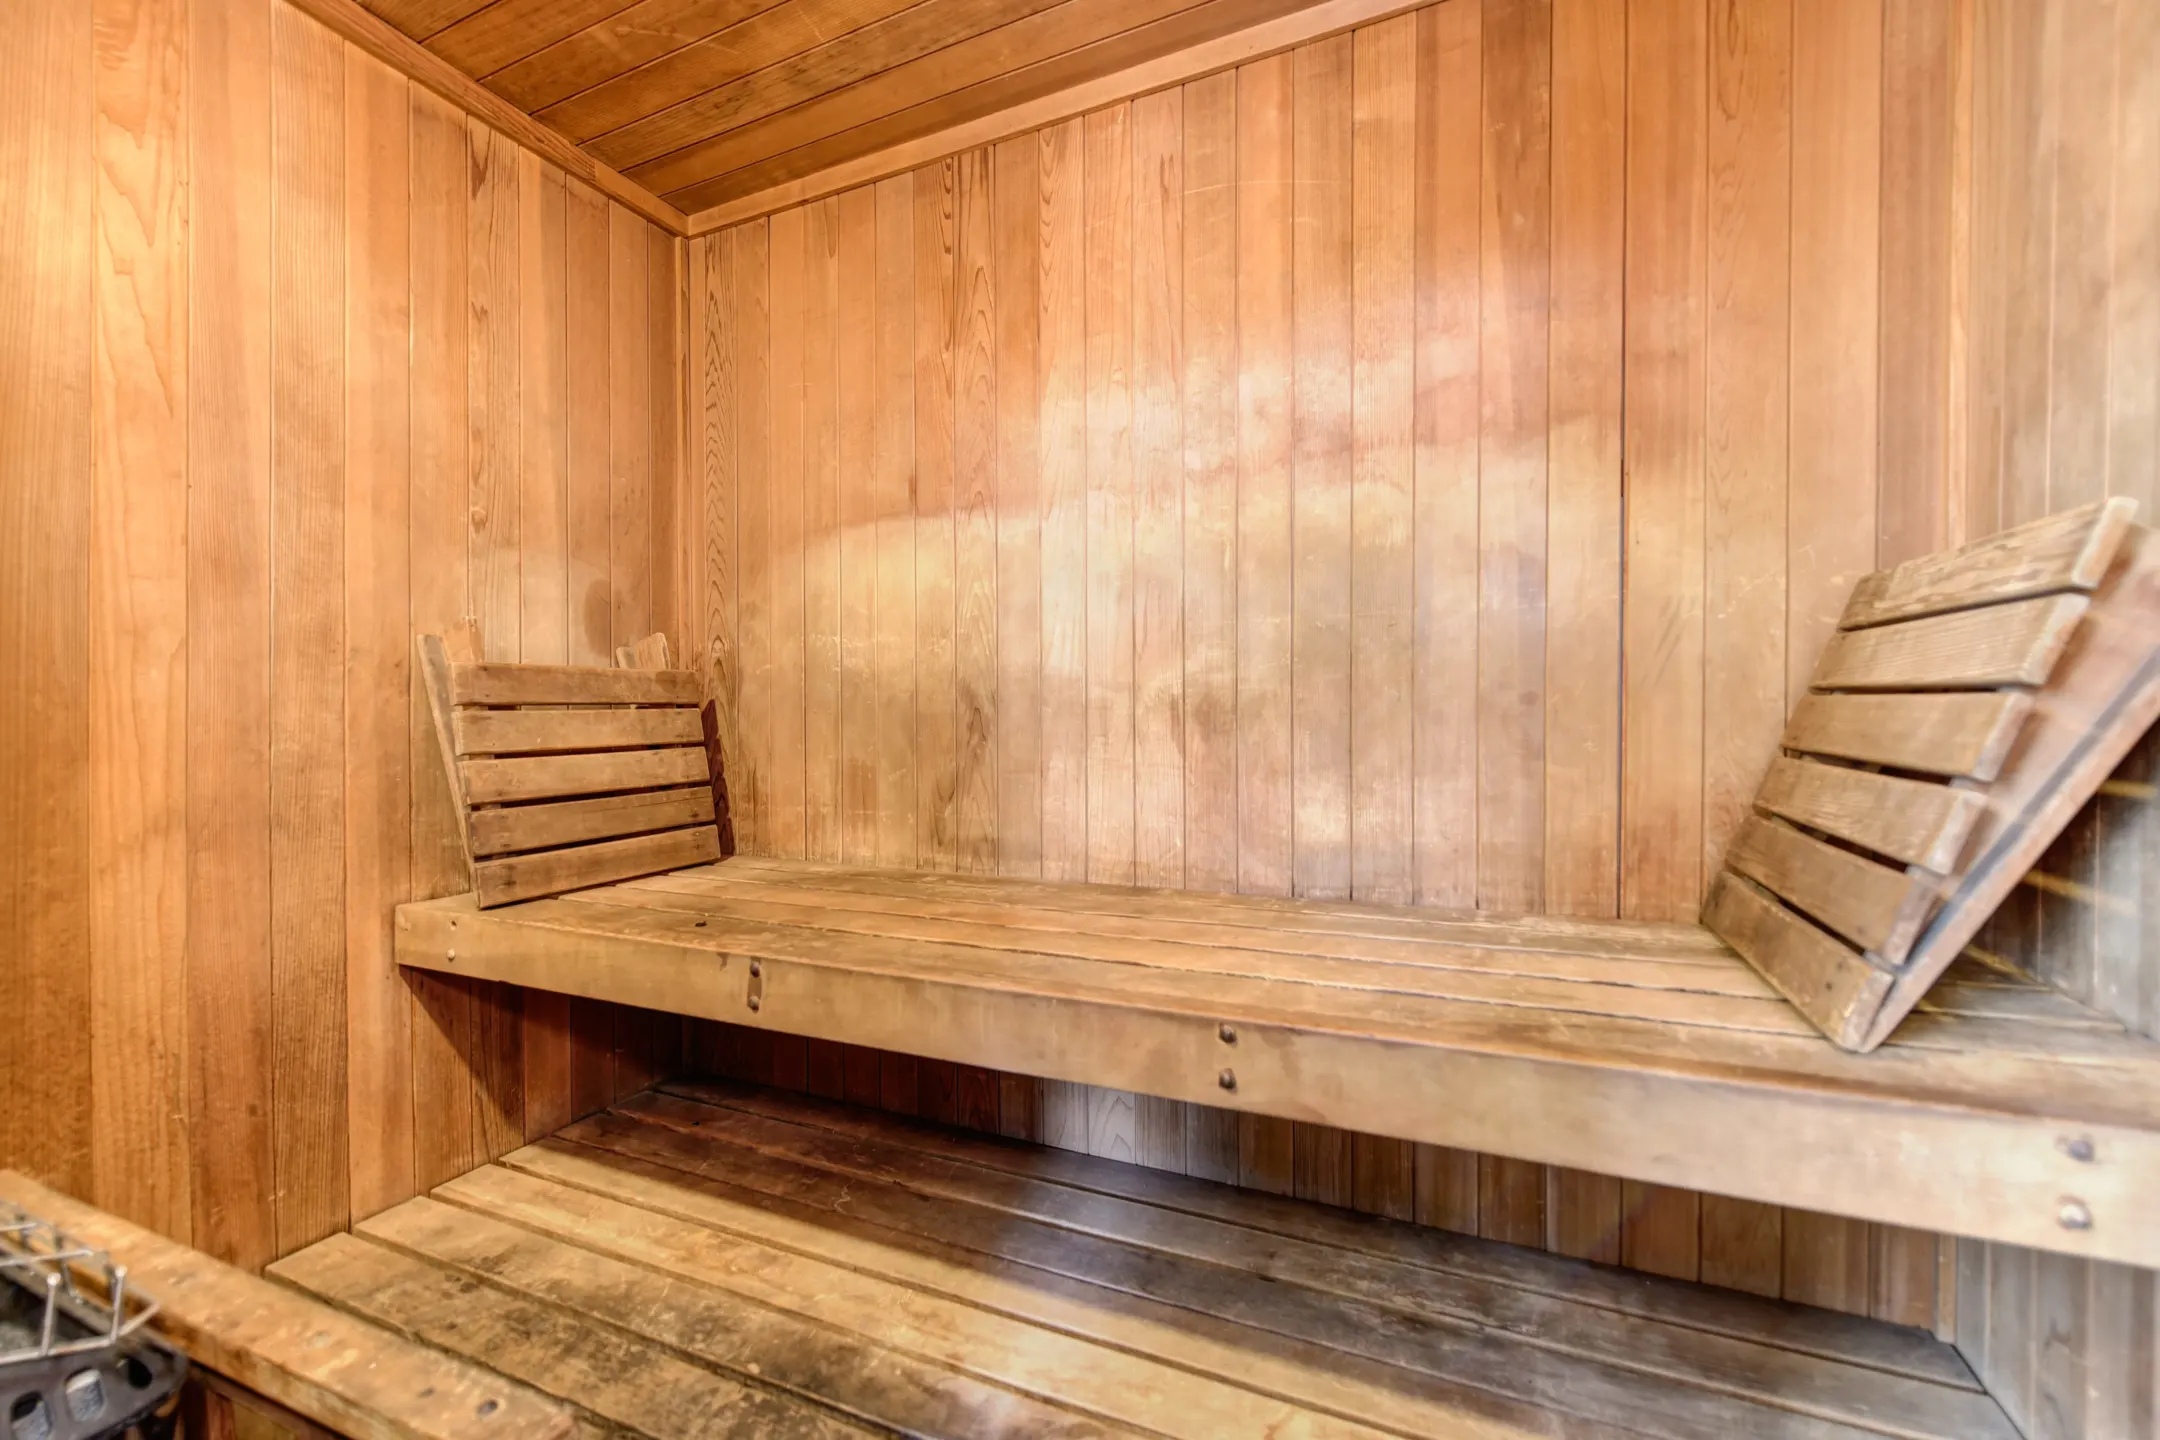 Living Room - The Woods At Toluca Lake - Burbank, CA